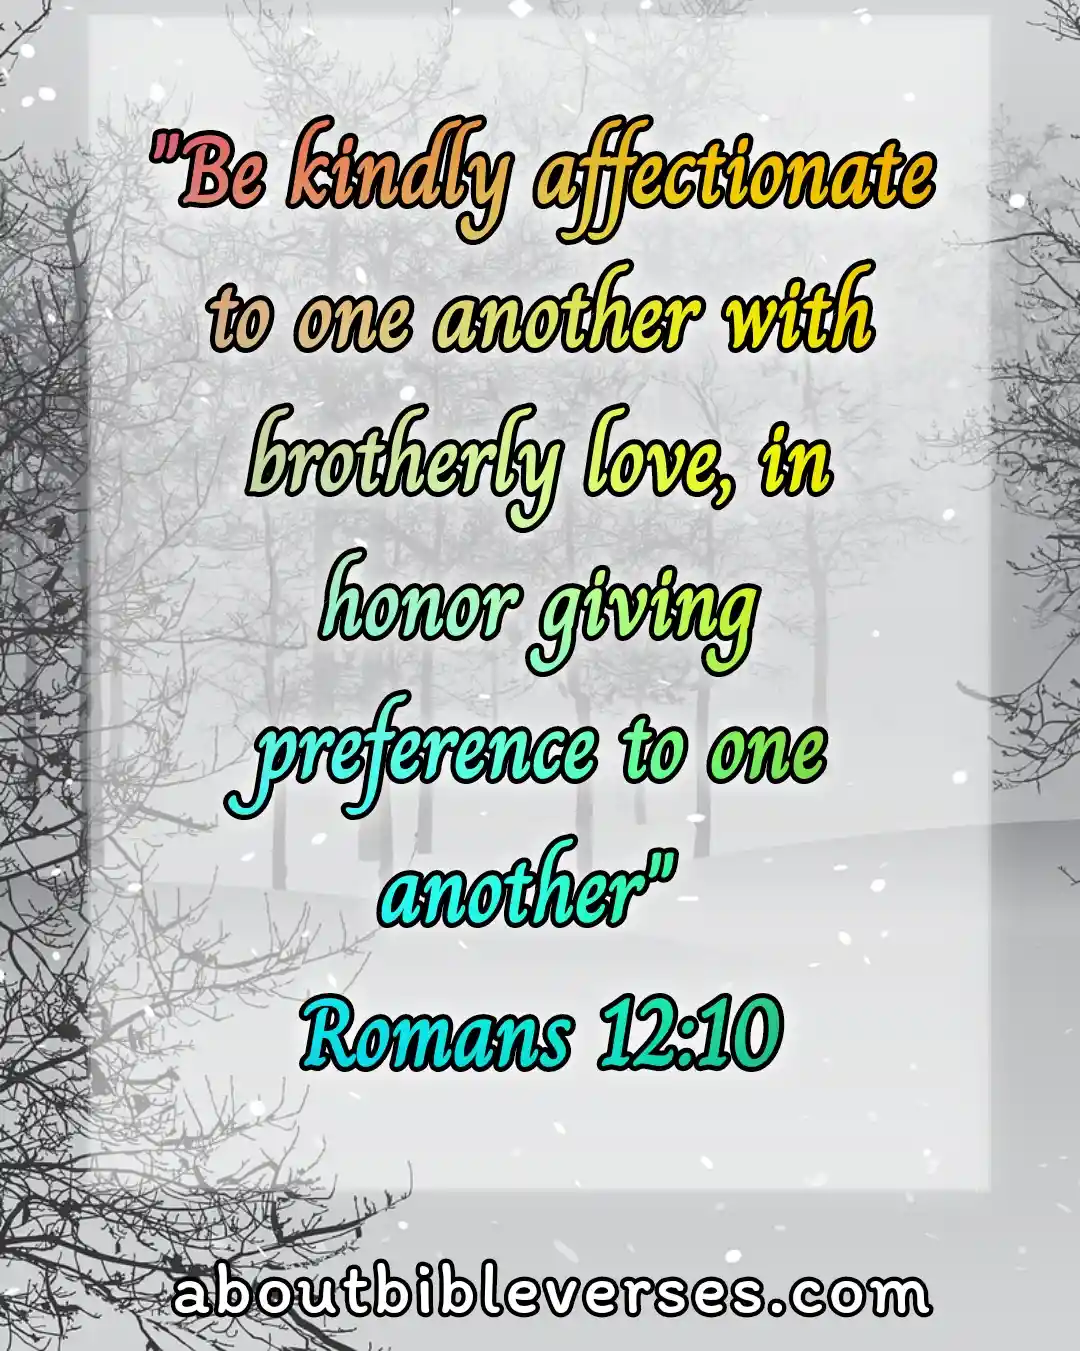 Bible Verses About Affection (Romans 12:10)